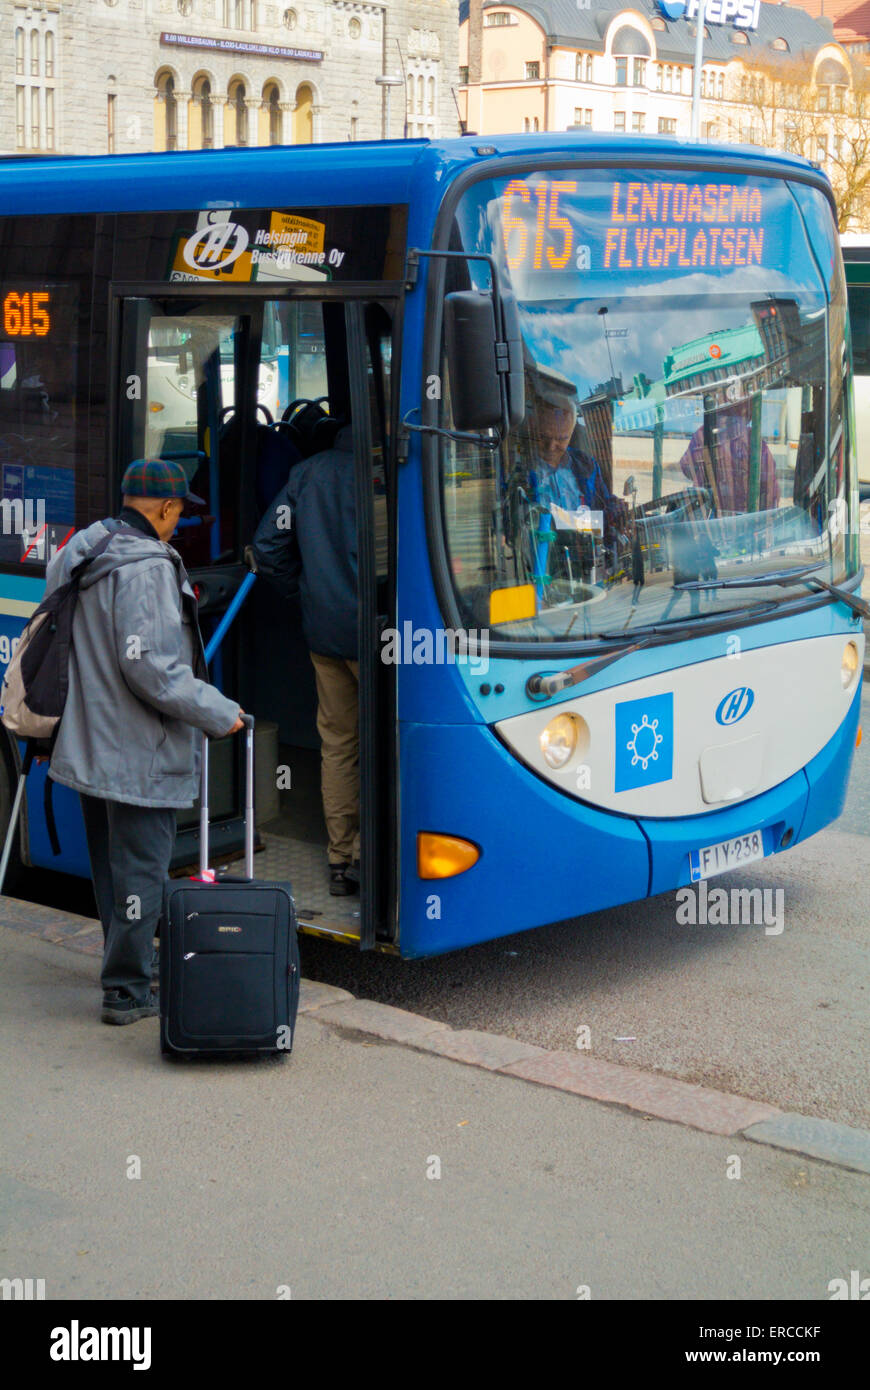 Aeroporto In bus 615, alla stazione ferroviaria, Helsinki, Finlandia Foto Stock